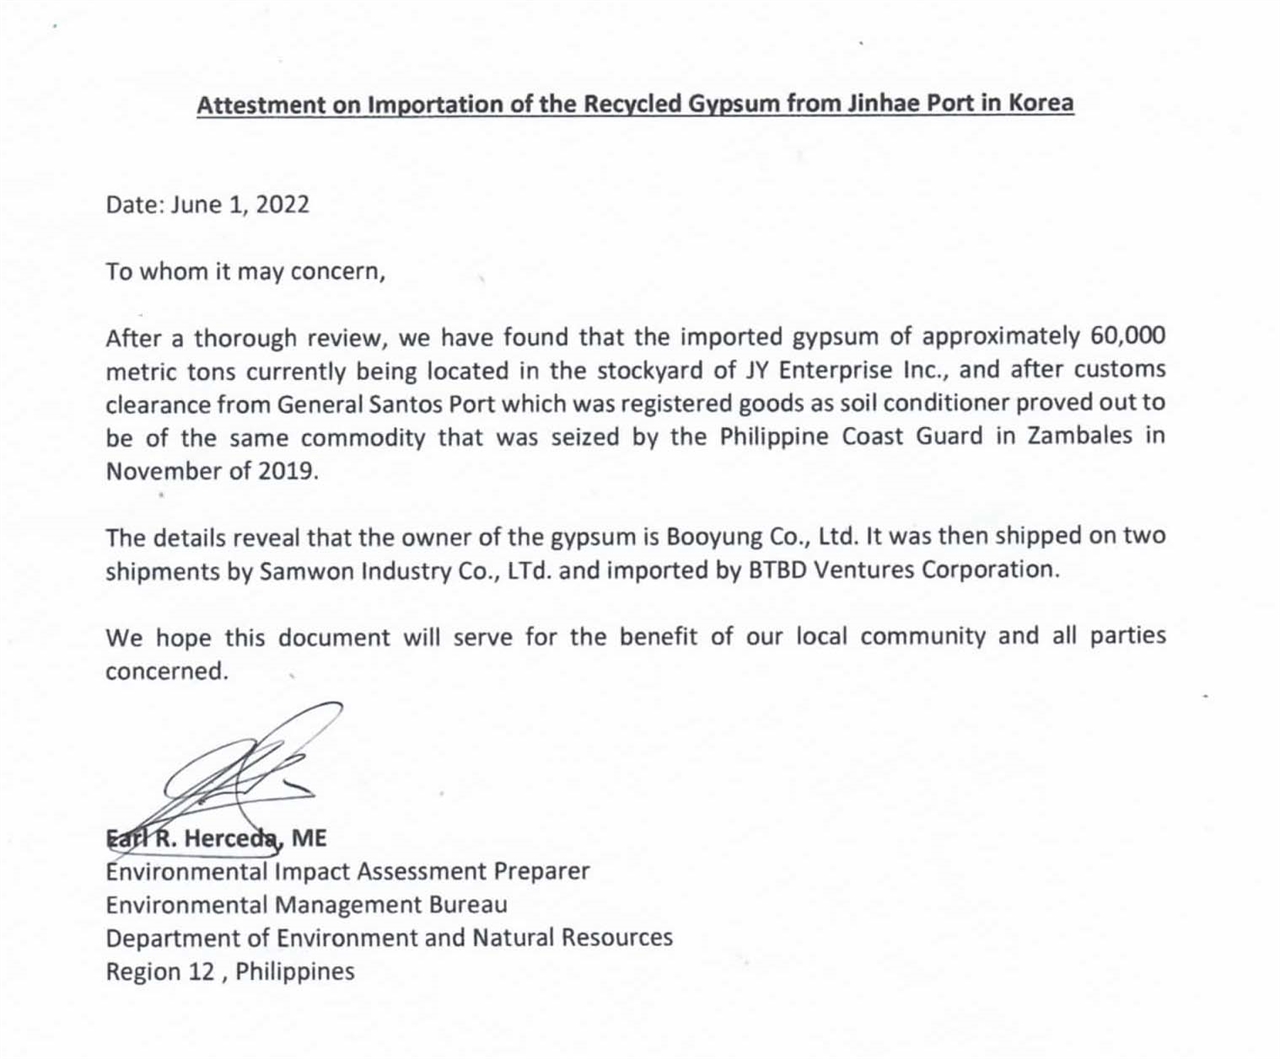 필리핀 환경부 소속 환경관리국(EMB)이 2022년 6월 1일 부영주택의 폐석고 수출대행업체인 삼원환경에 보낸 이메일. EMB는 이 이메일에서 민다나오섬 제너럴 산토스 시에 방치된 폐석고의 주인(owner)은 부영주택임을 명시했다.